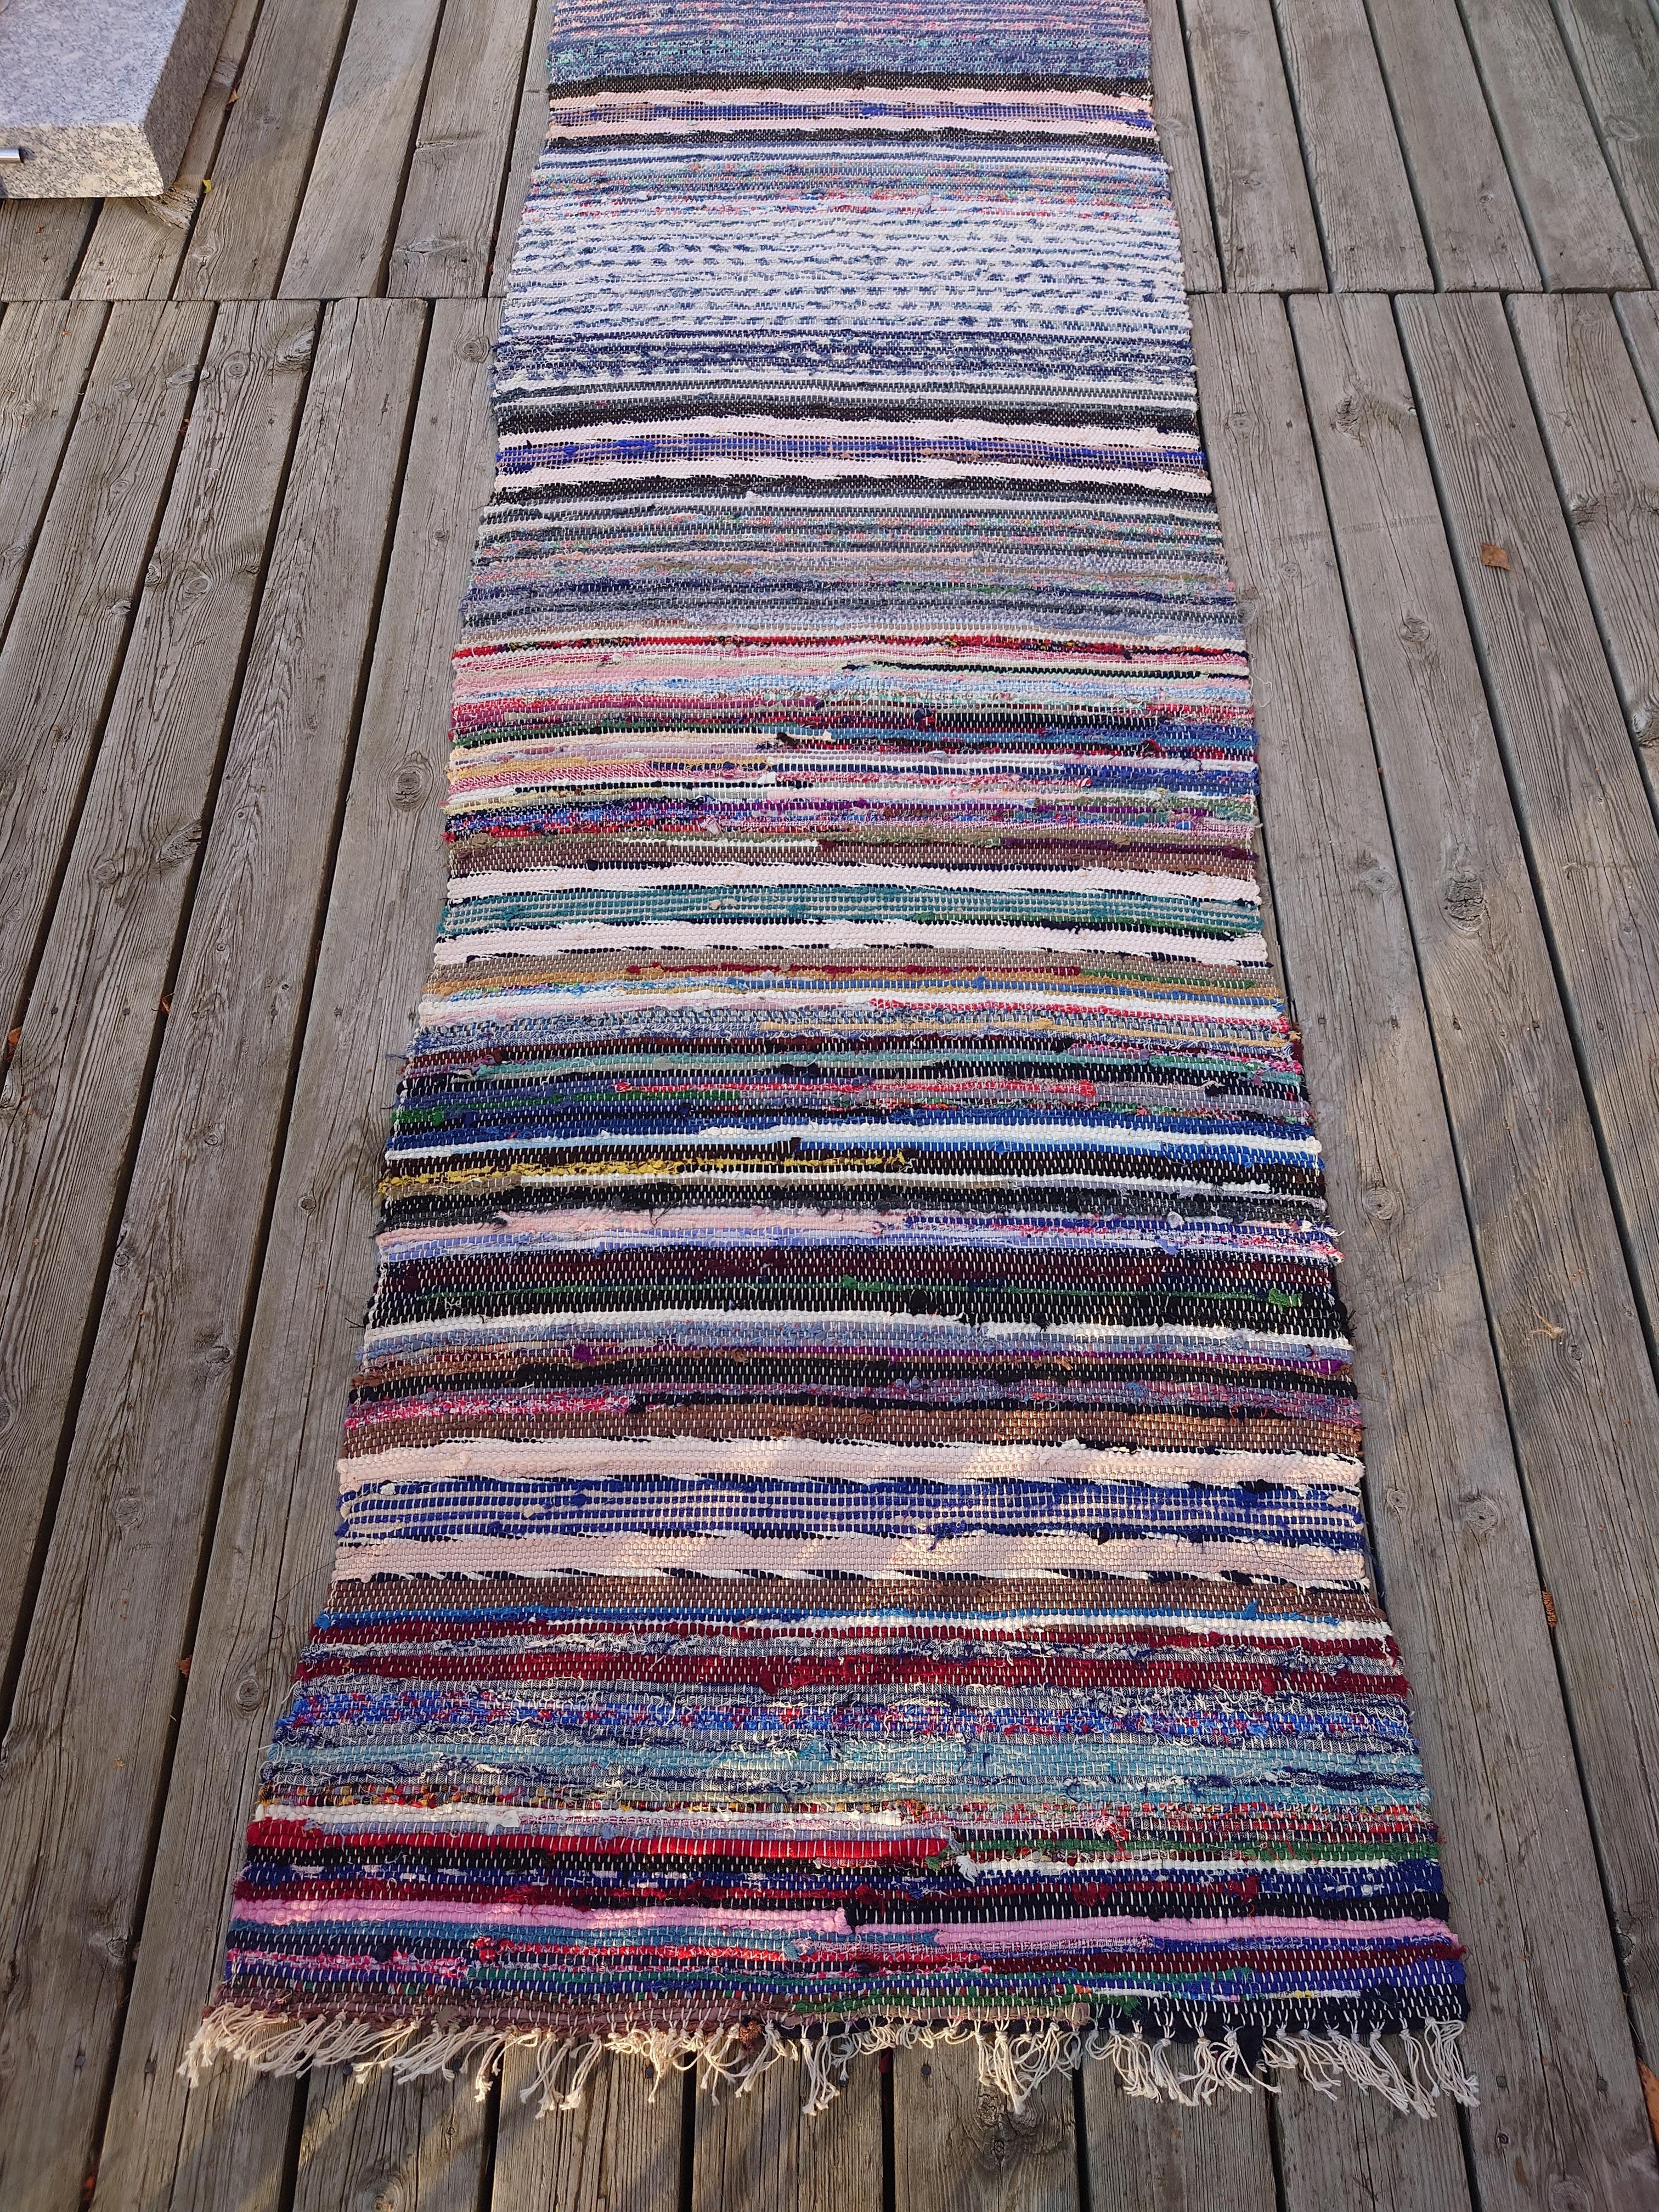  Ein fantastischer schwedischer Fleckerlteppich in schönen Farben und Mustern.
Handgewebt in Boden Nordschweden .
Der Teppich ist frisch gewaschen.
Vintage & antike schwedische Rag Rugs aus Schweden gibt es in einer Vielzahl von Farben und Mustern.